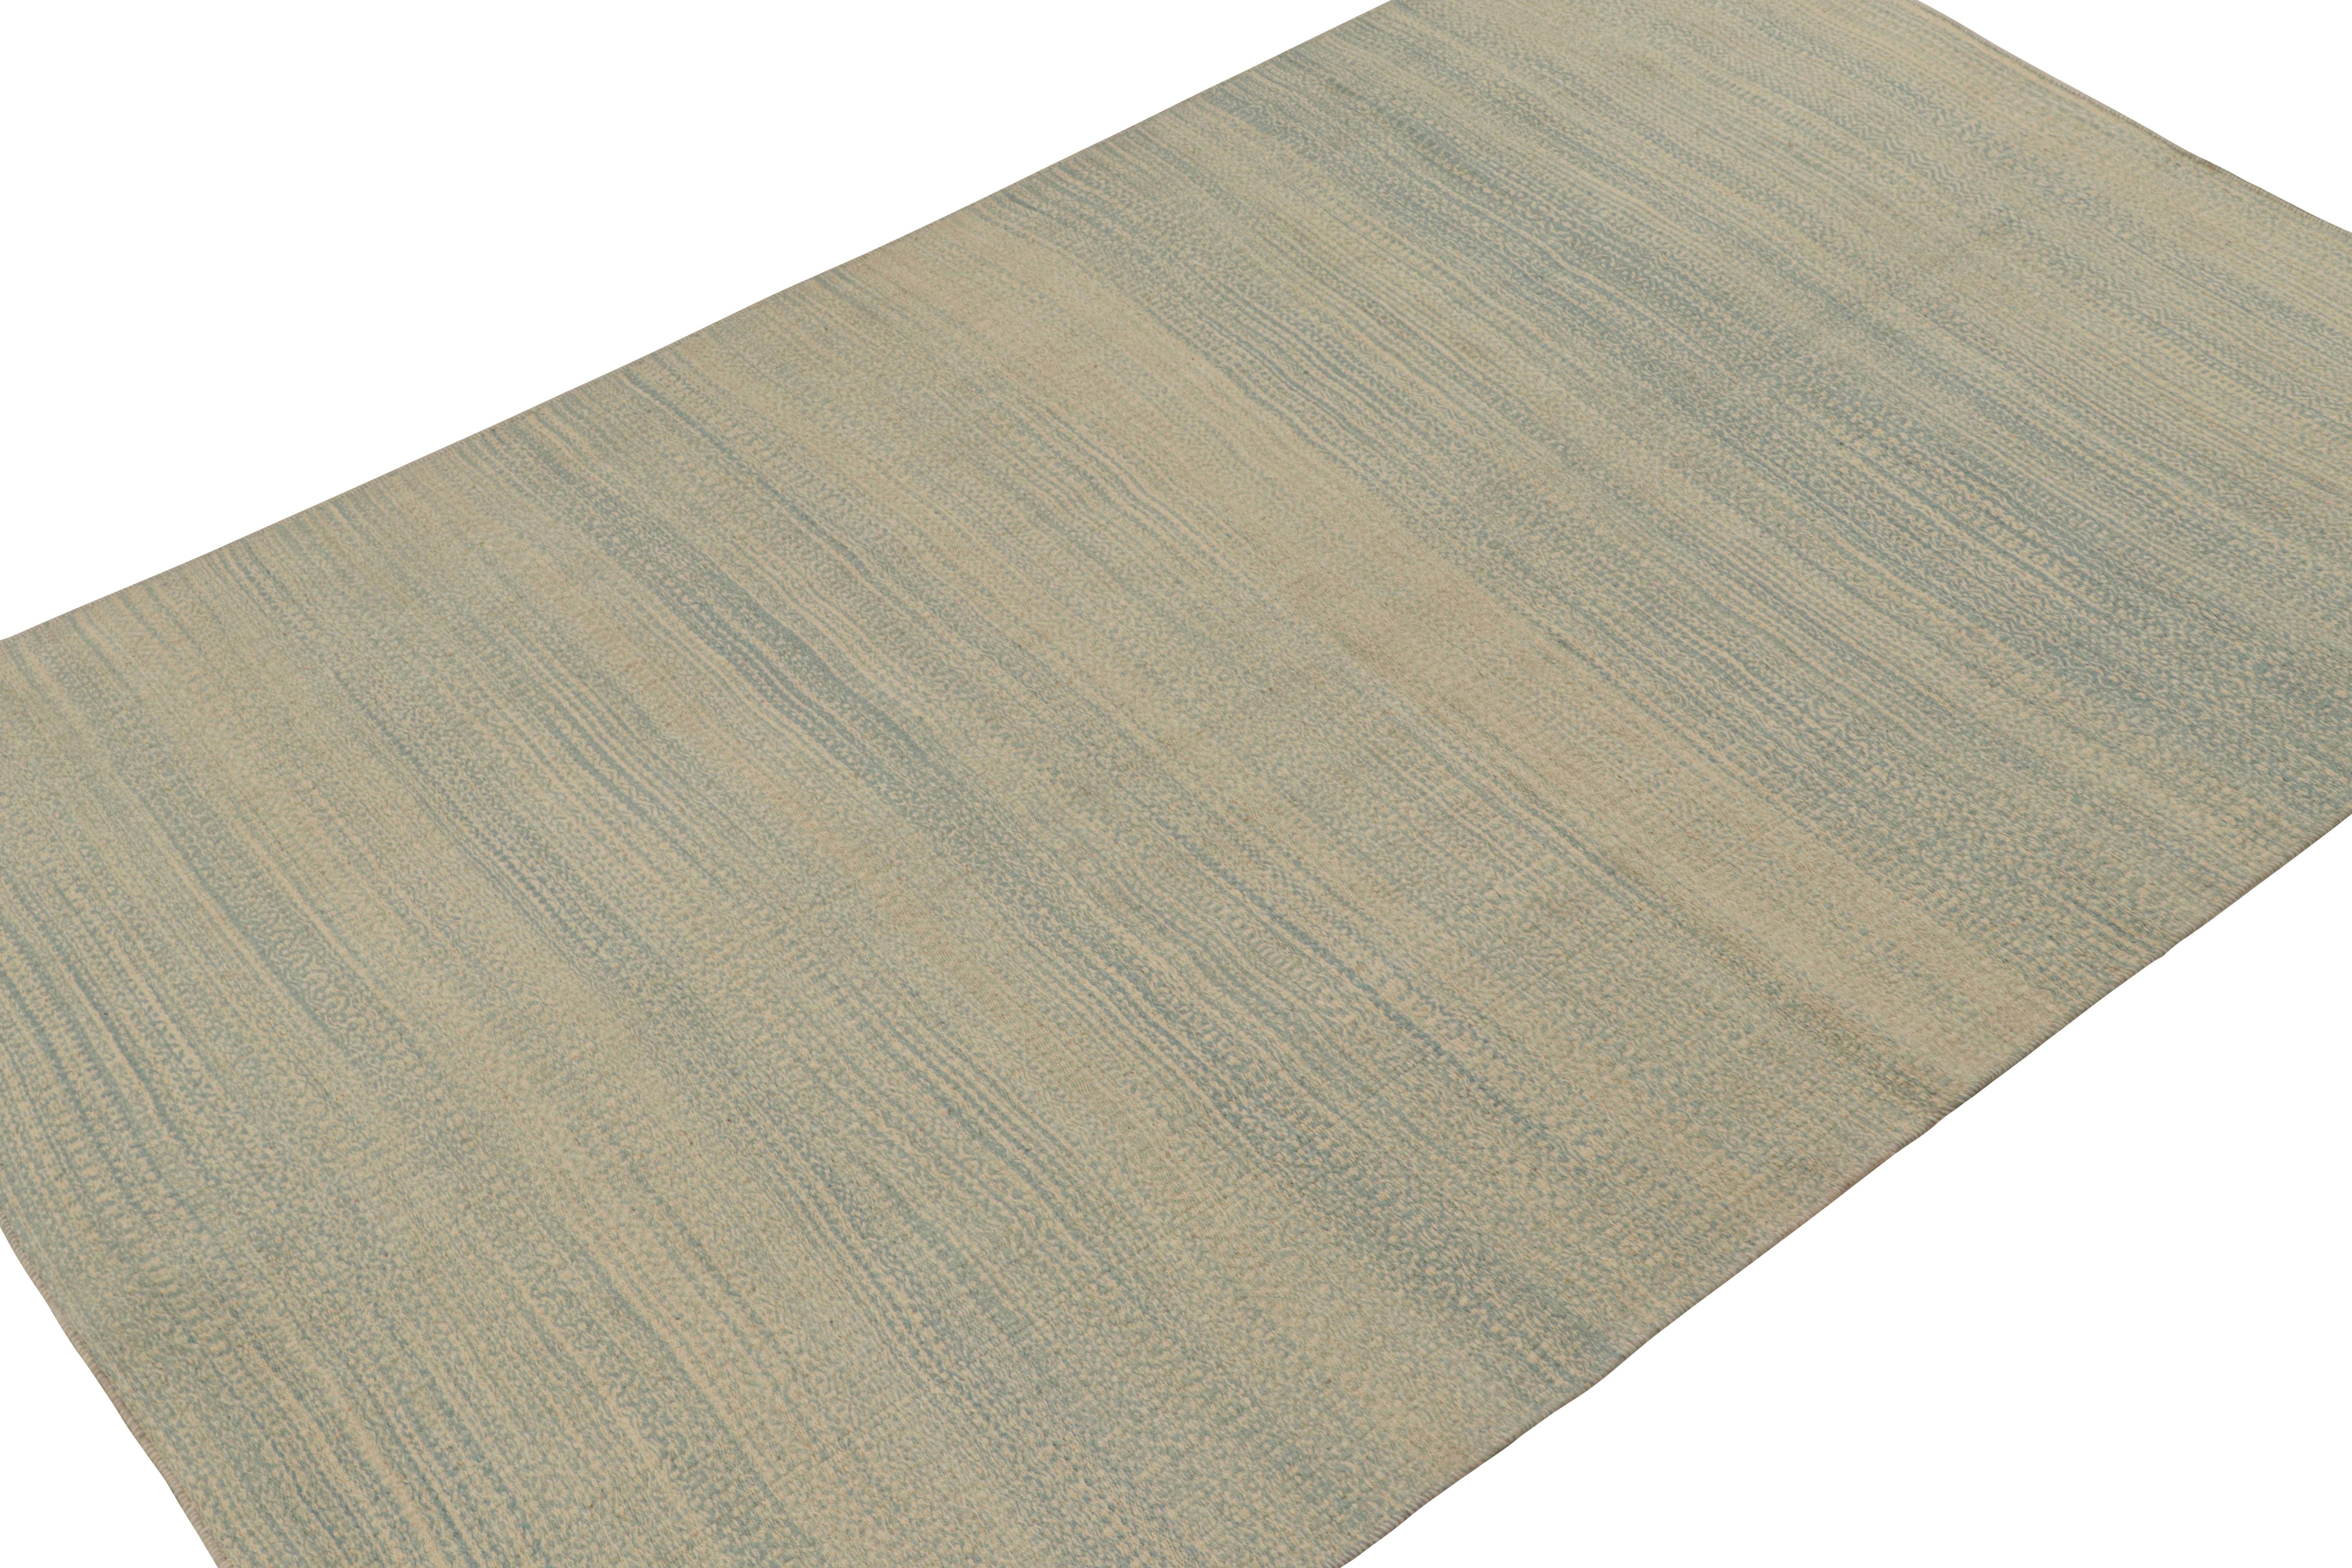 Dieser moderne 6x10 Kelim-Teppich von Rug & Kilim ist aus Wolle handgewebt und wird in einem modernen Flachgewebe-Stil hergestellt.

Über das Design: 

Dieses Design besticht durch eine sorgfältige Mischung von Garnen in einer originellen